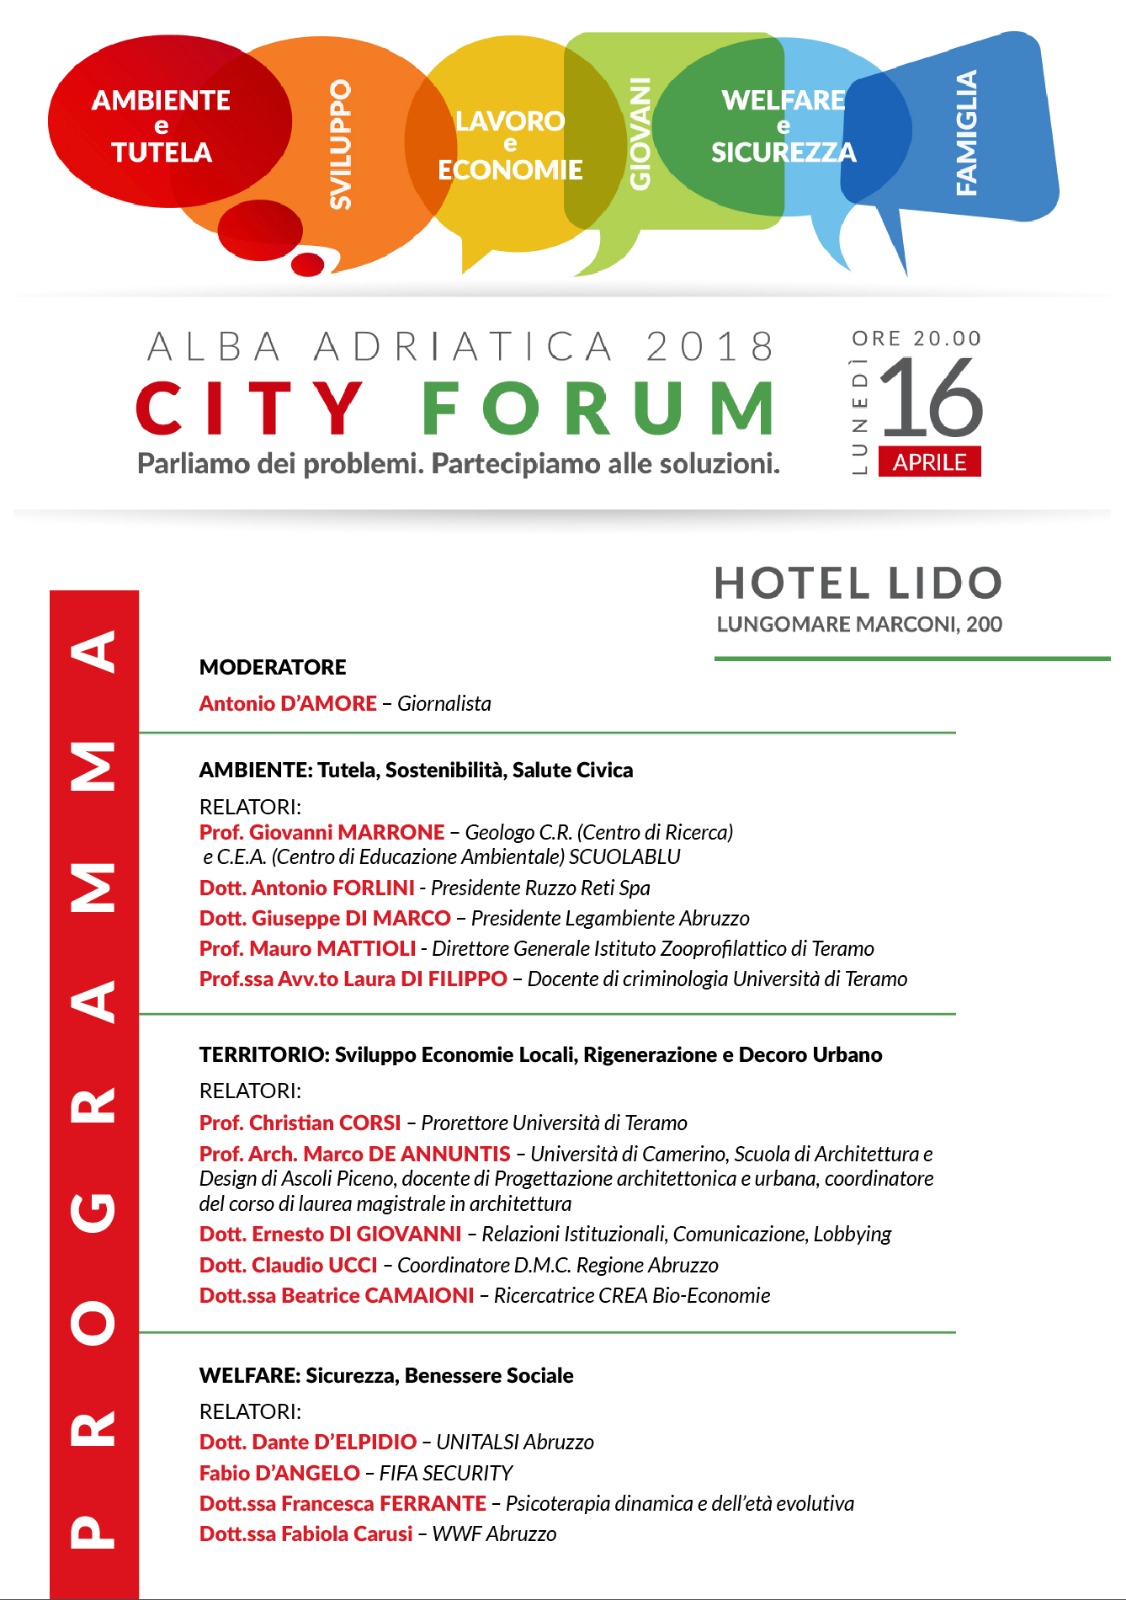 Alba Adriatica.Arriva “City Forum”: nuova progettualità su ambiente, sviluppo, lavoro, welfare e sicurezza